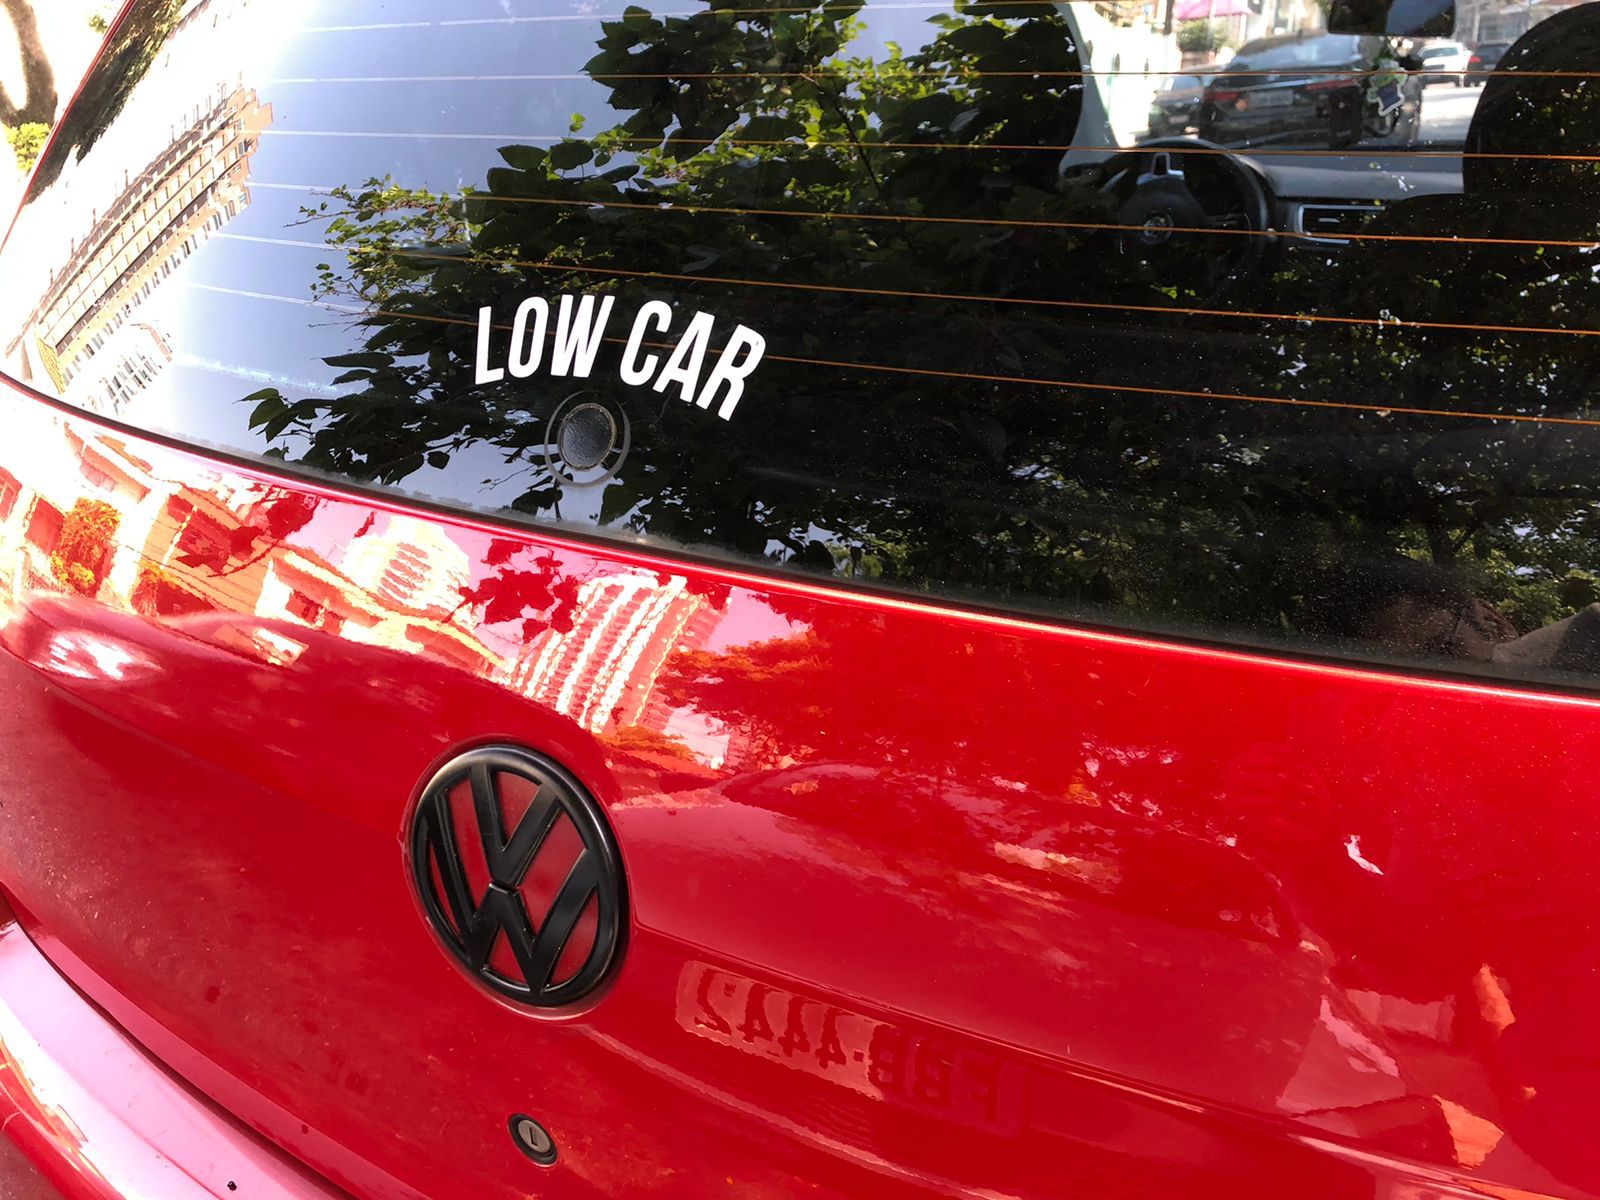 Adesivo Oficial Low Cars - LowCars - Loja Oficial